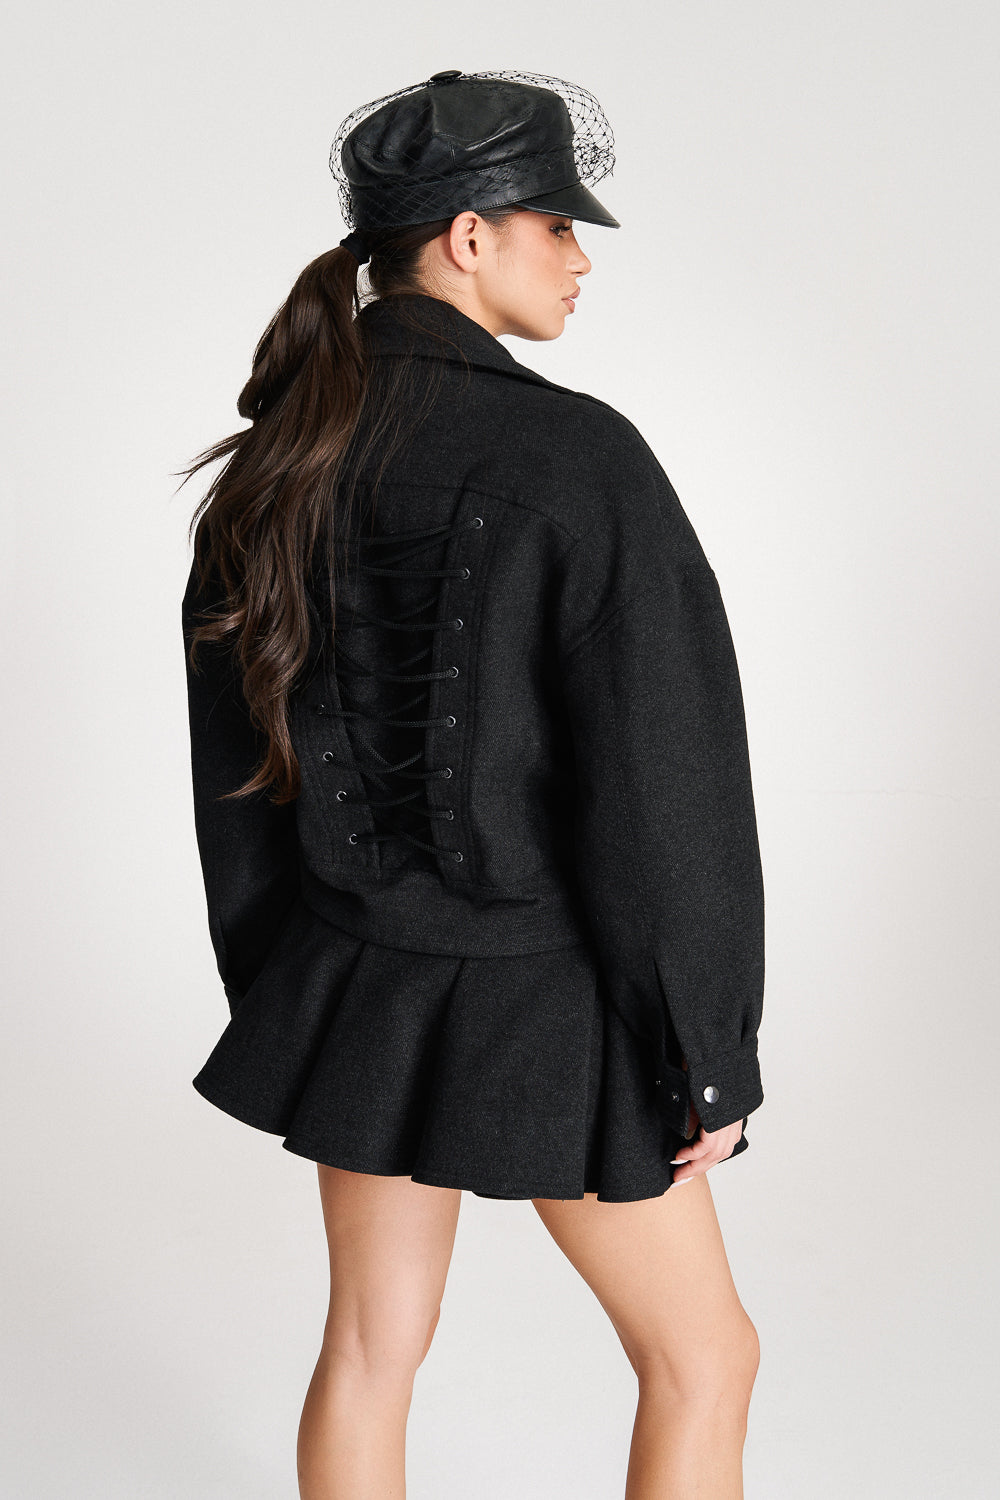 'Iris' Black Wool Wrap Jacket